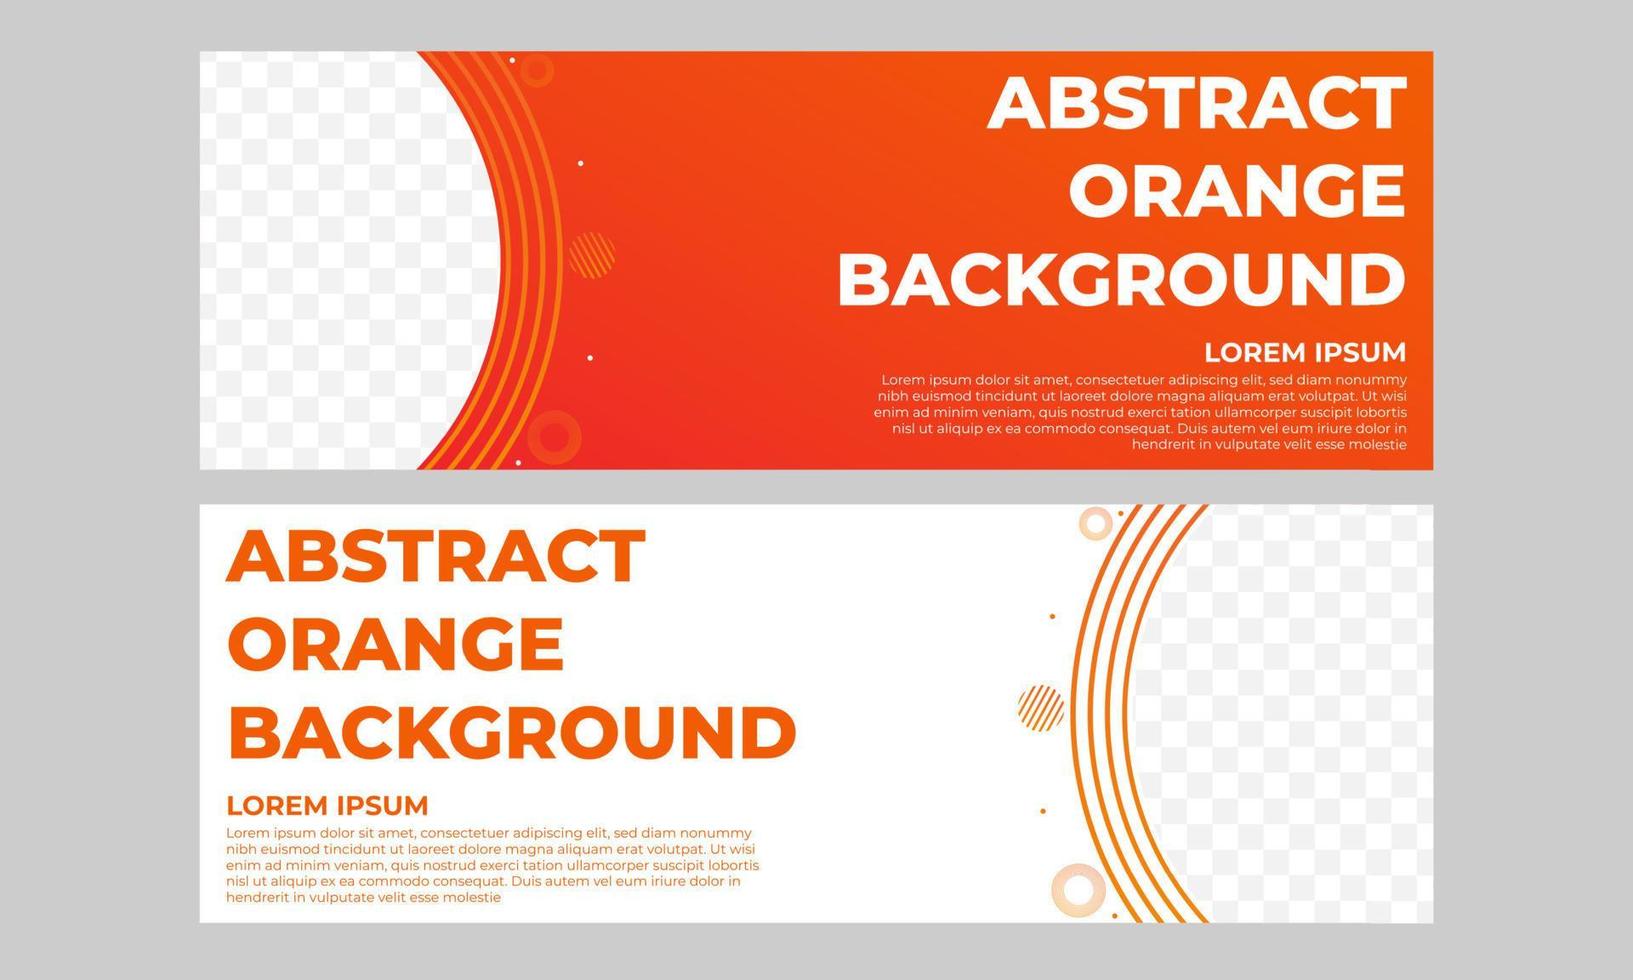 modèle de bannière dégradé orange abstrait vecteur